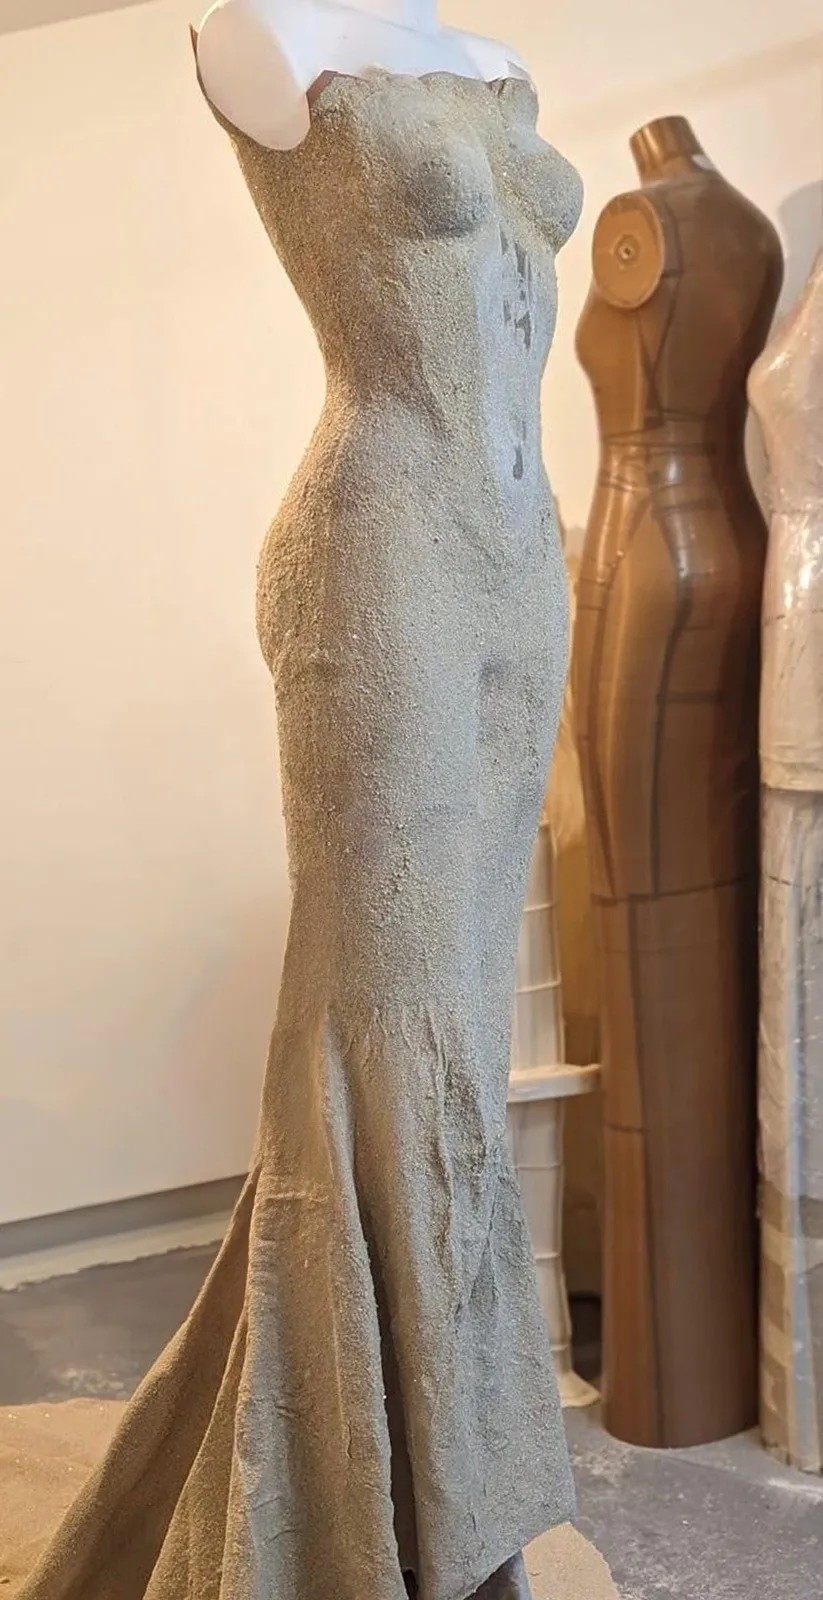 Cận cảnh chất liệu, thiết kế váy được Tyla diện ở Met Gala năm nay.